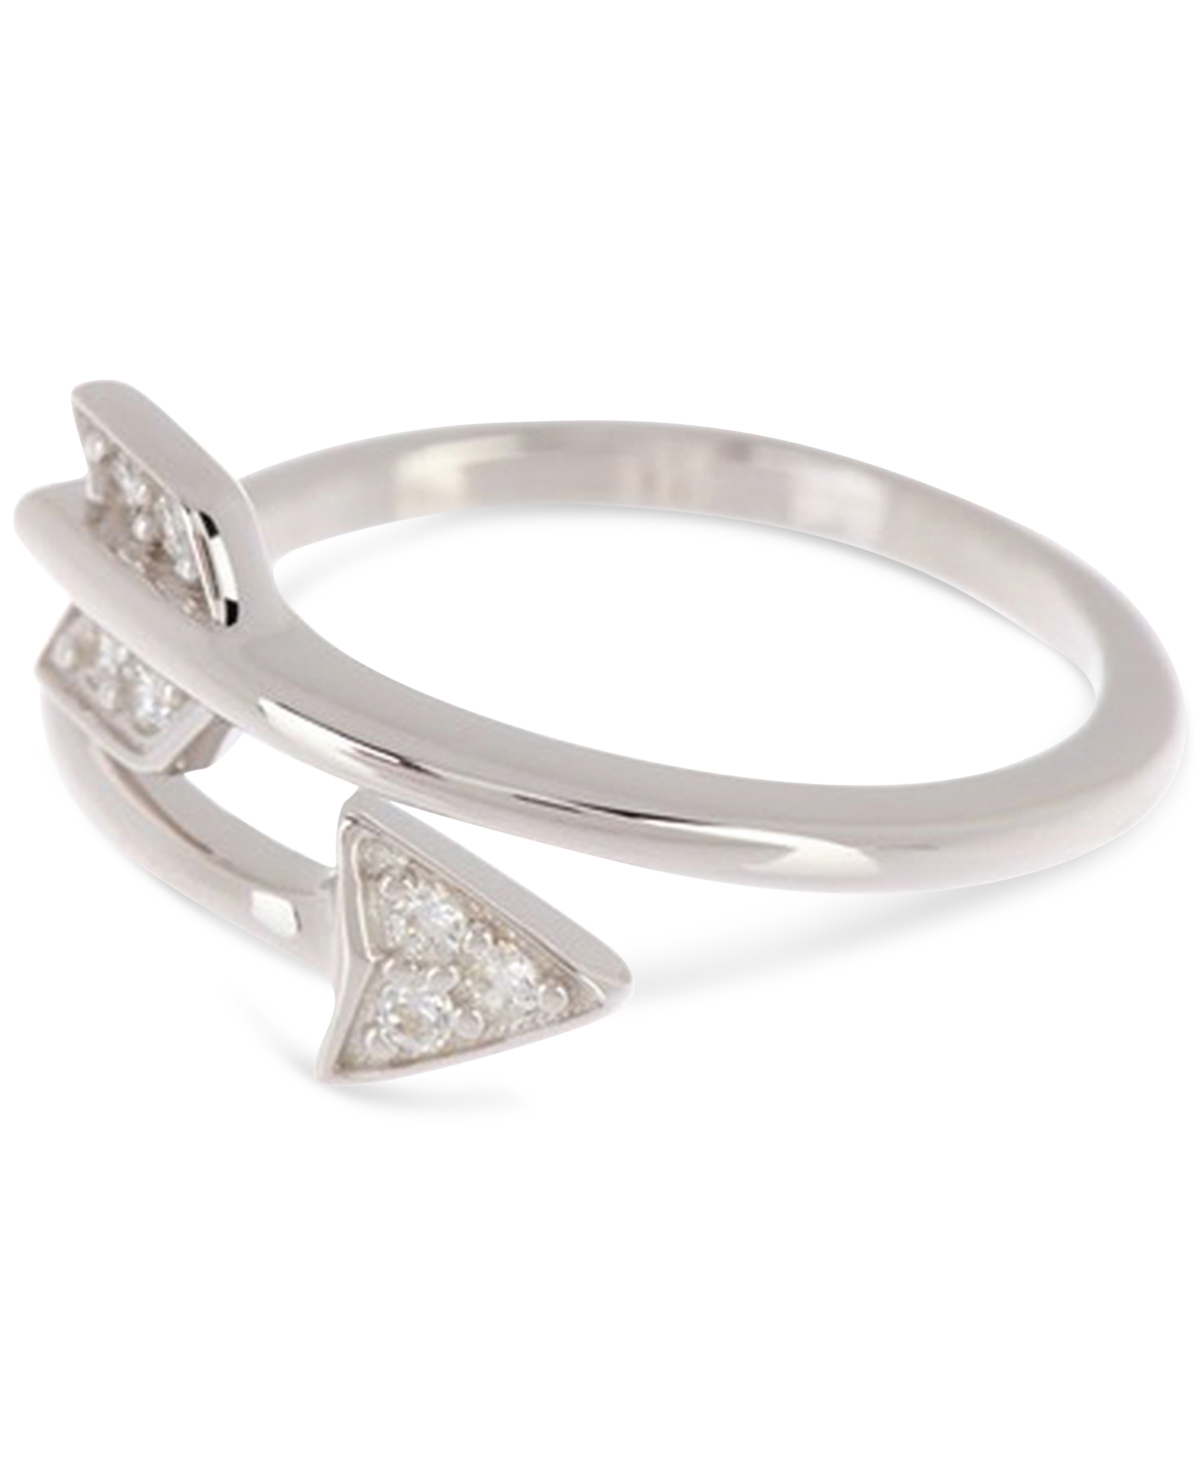 Silver-Tone Adjustable Crystal Arrow Ring - Silver